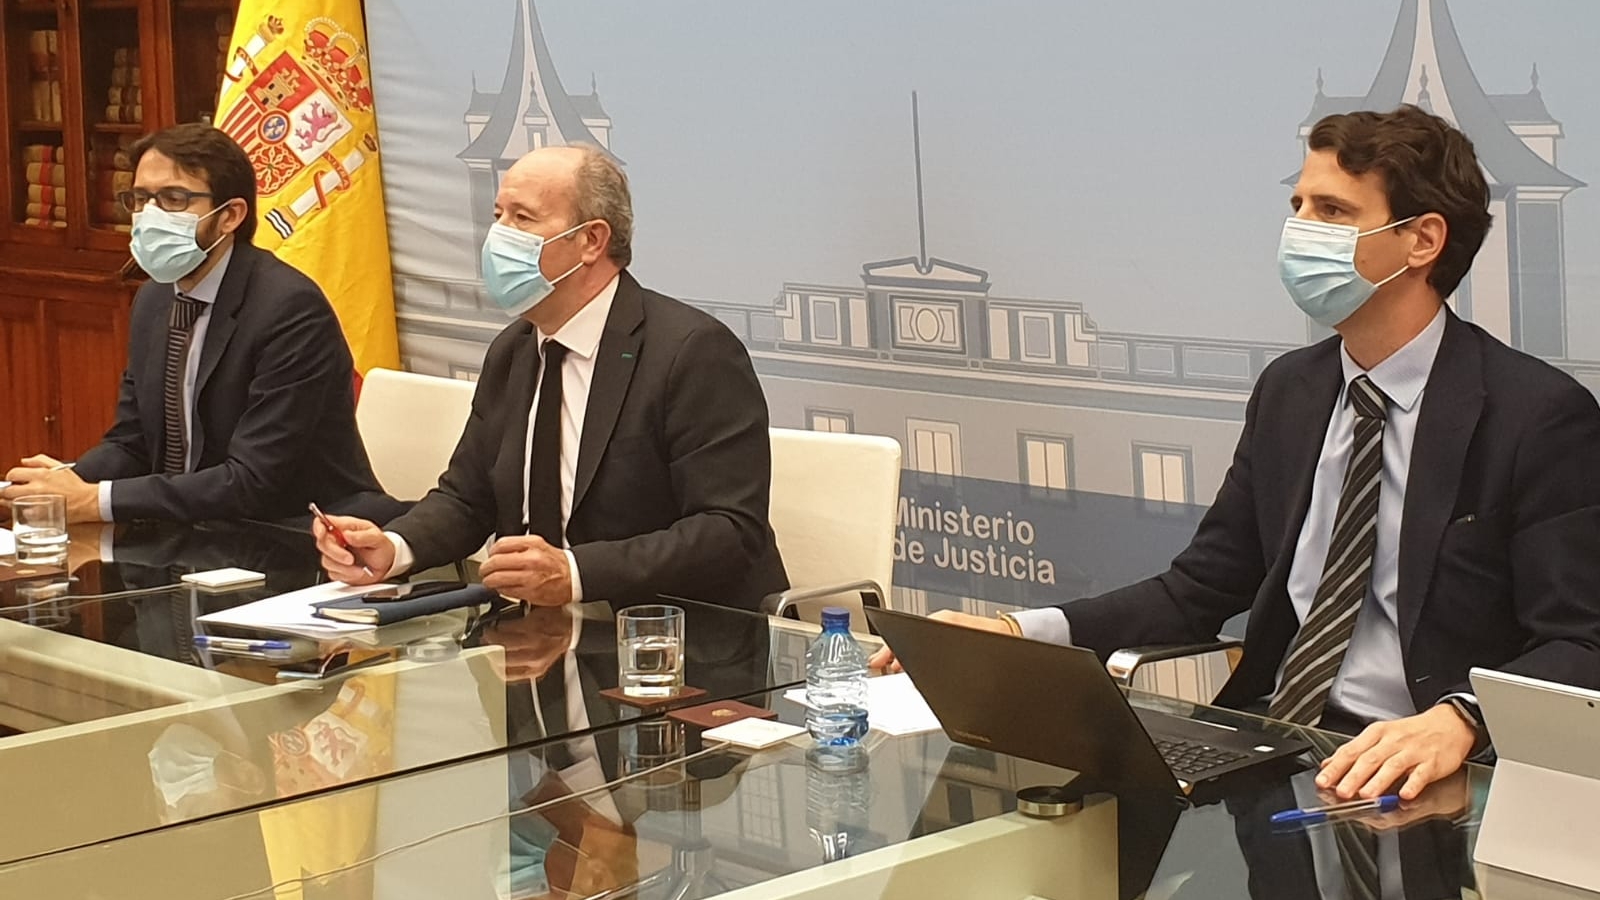 El ministro de Justicia, Juan Carlos Campo, junto con el secretario de Estado, Pablo Zapatero y el secretario general para la innovación y calidad del servicio público de Justicia, Borja Vargues, durante la reunión de la Comisión de Coordinación de Crisis